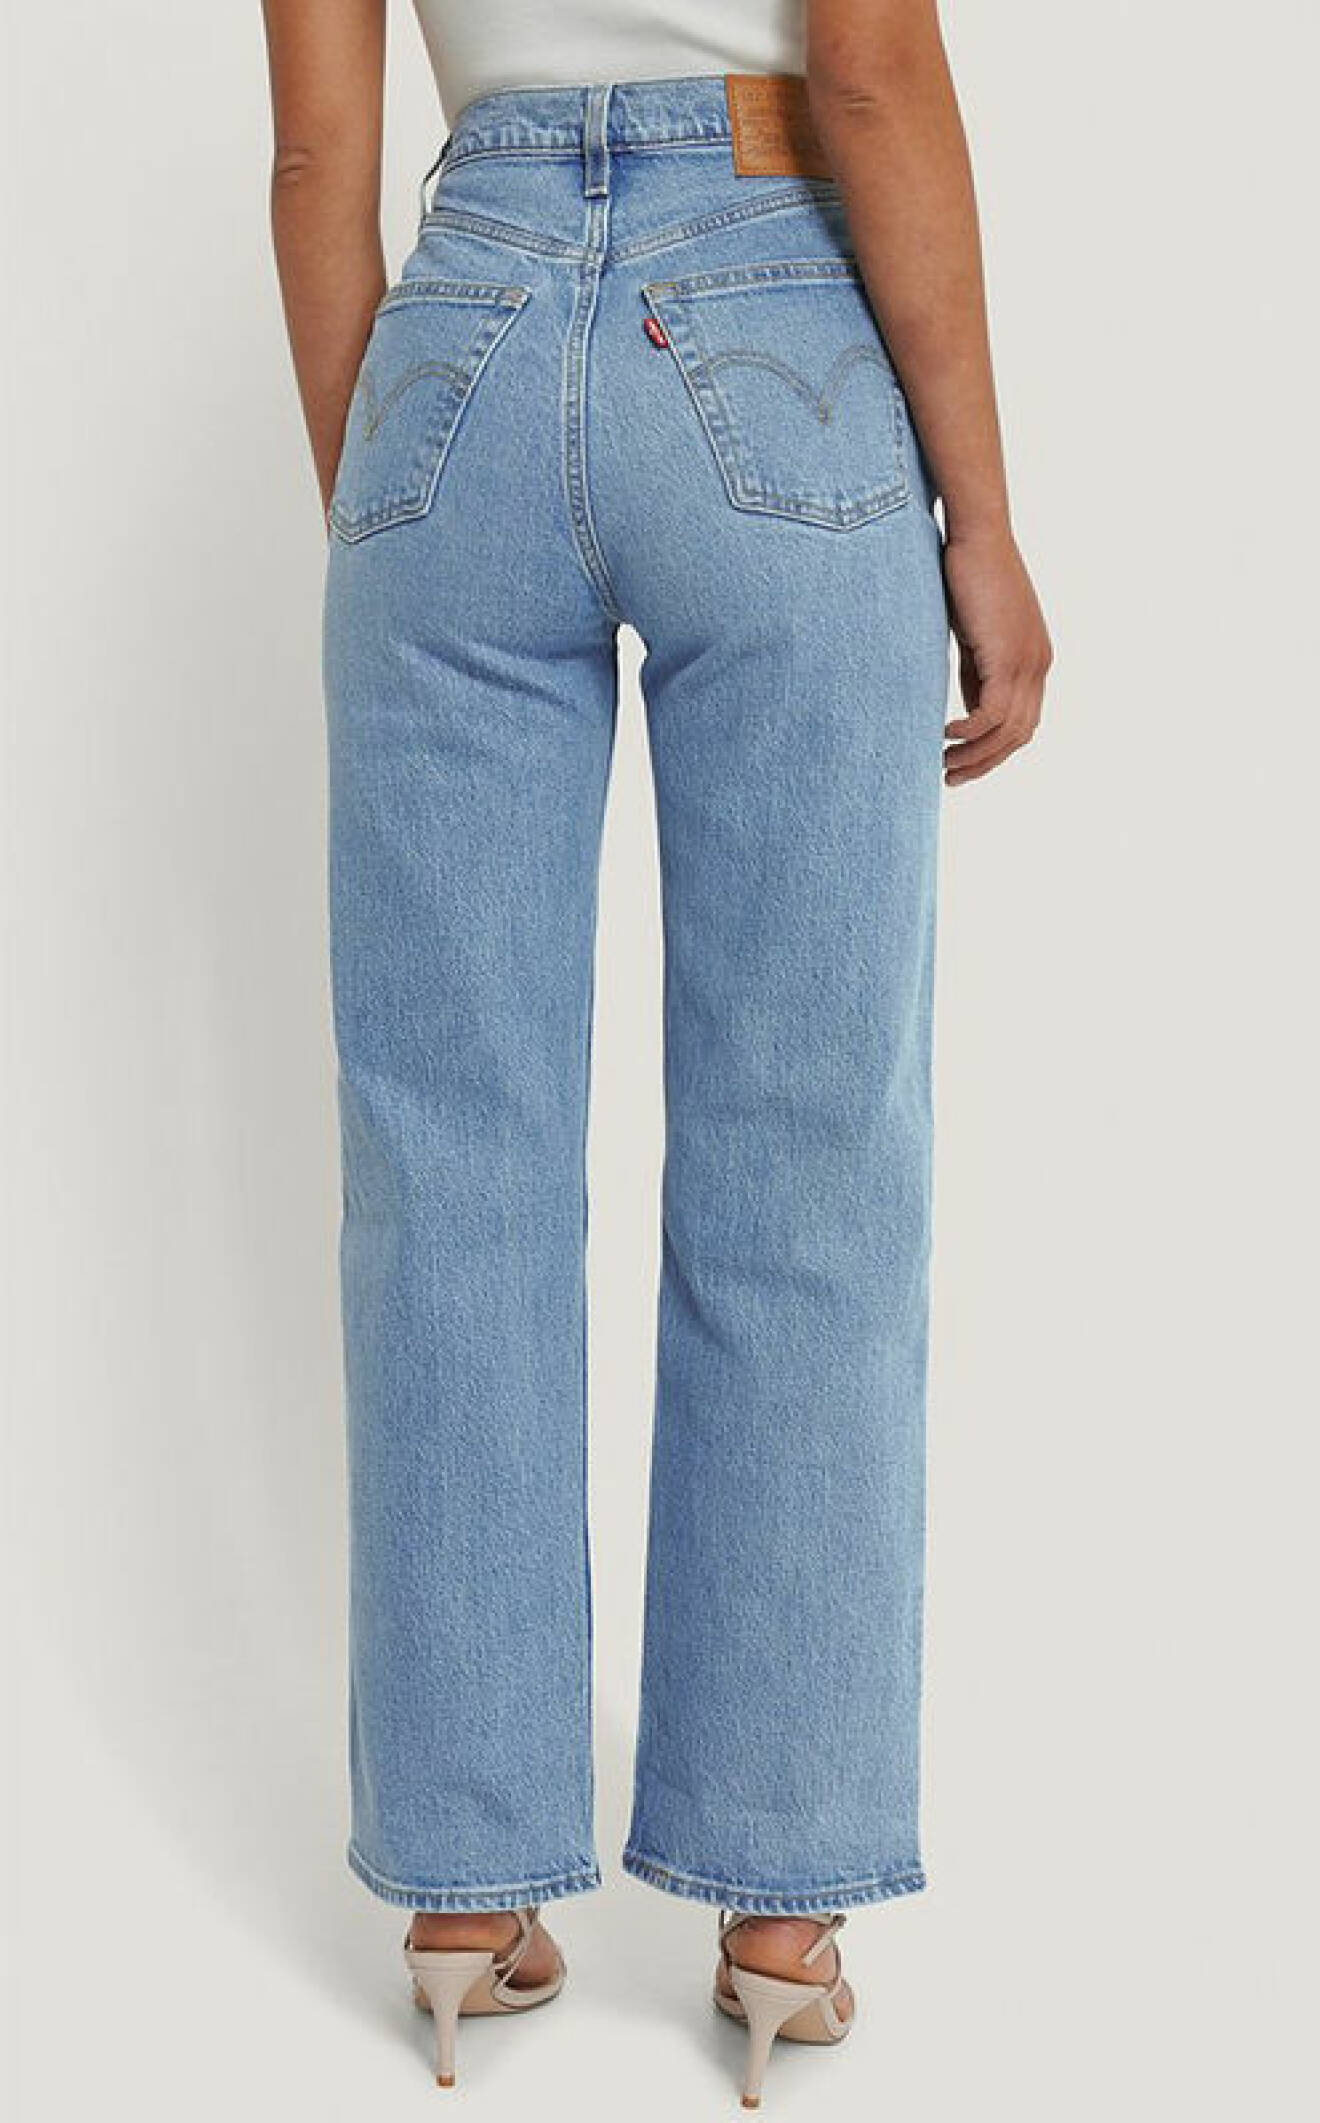 jeans-levis